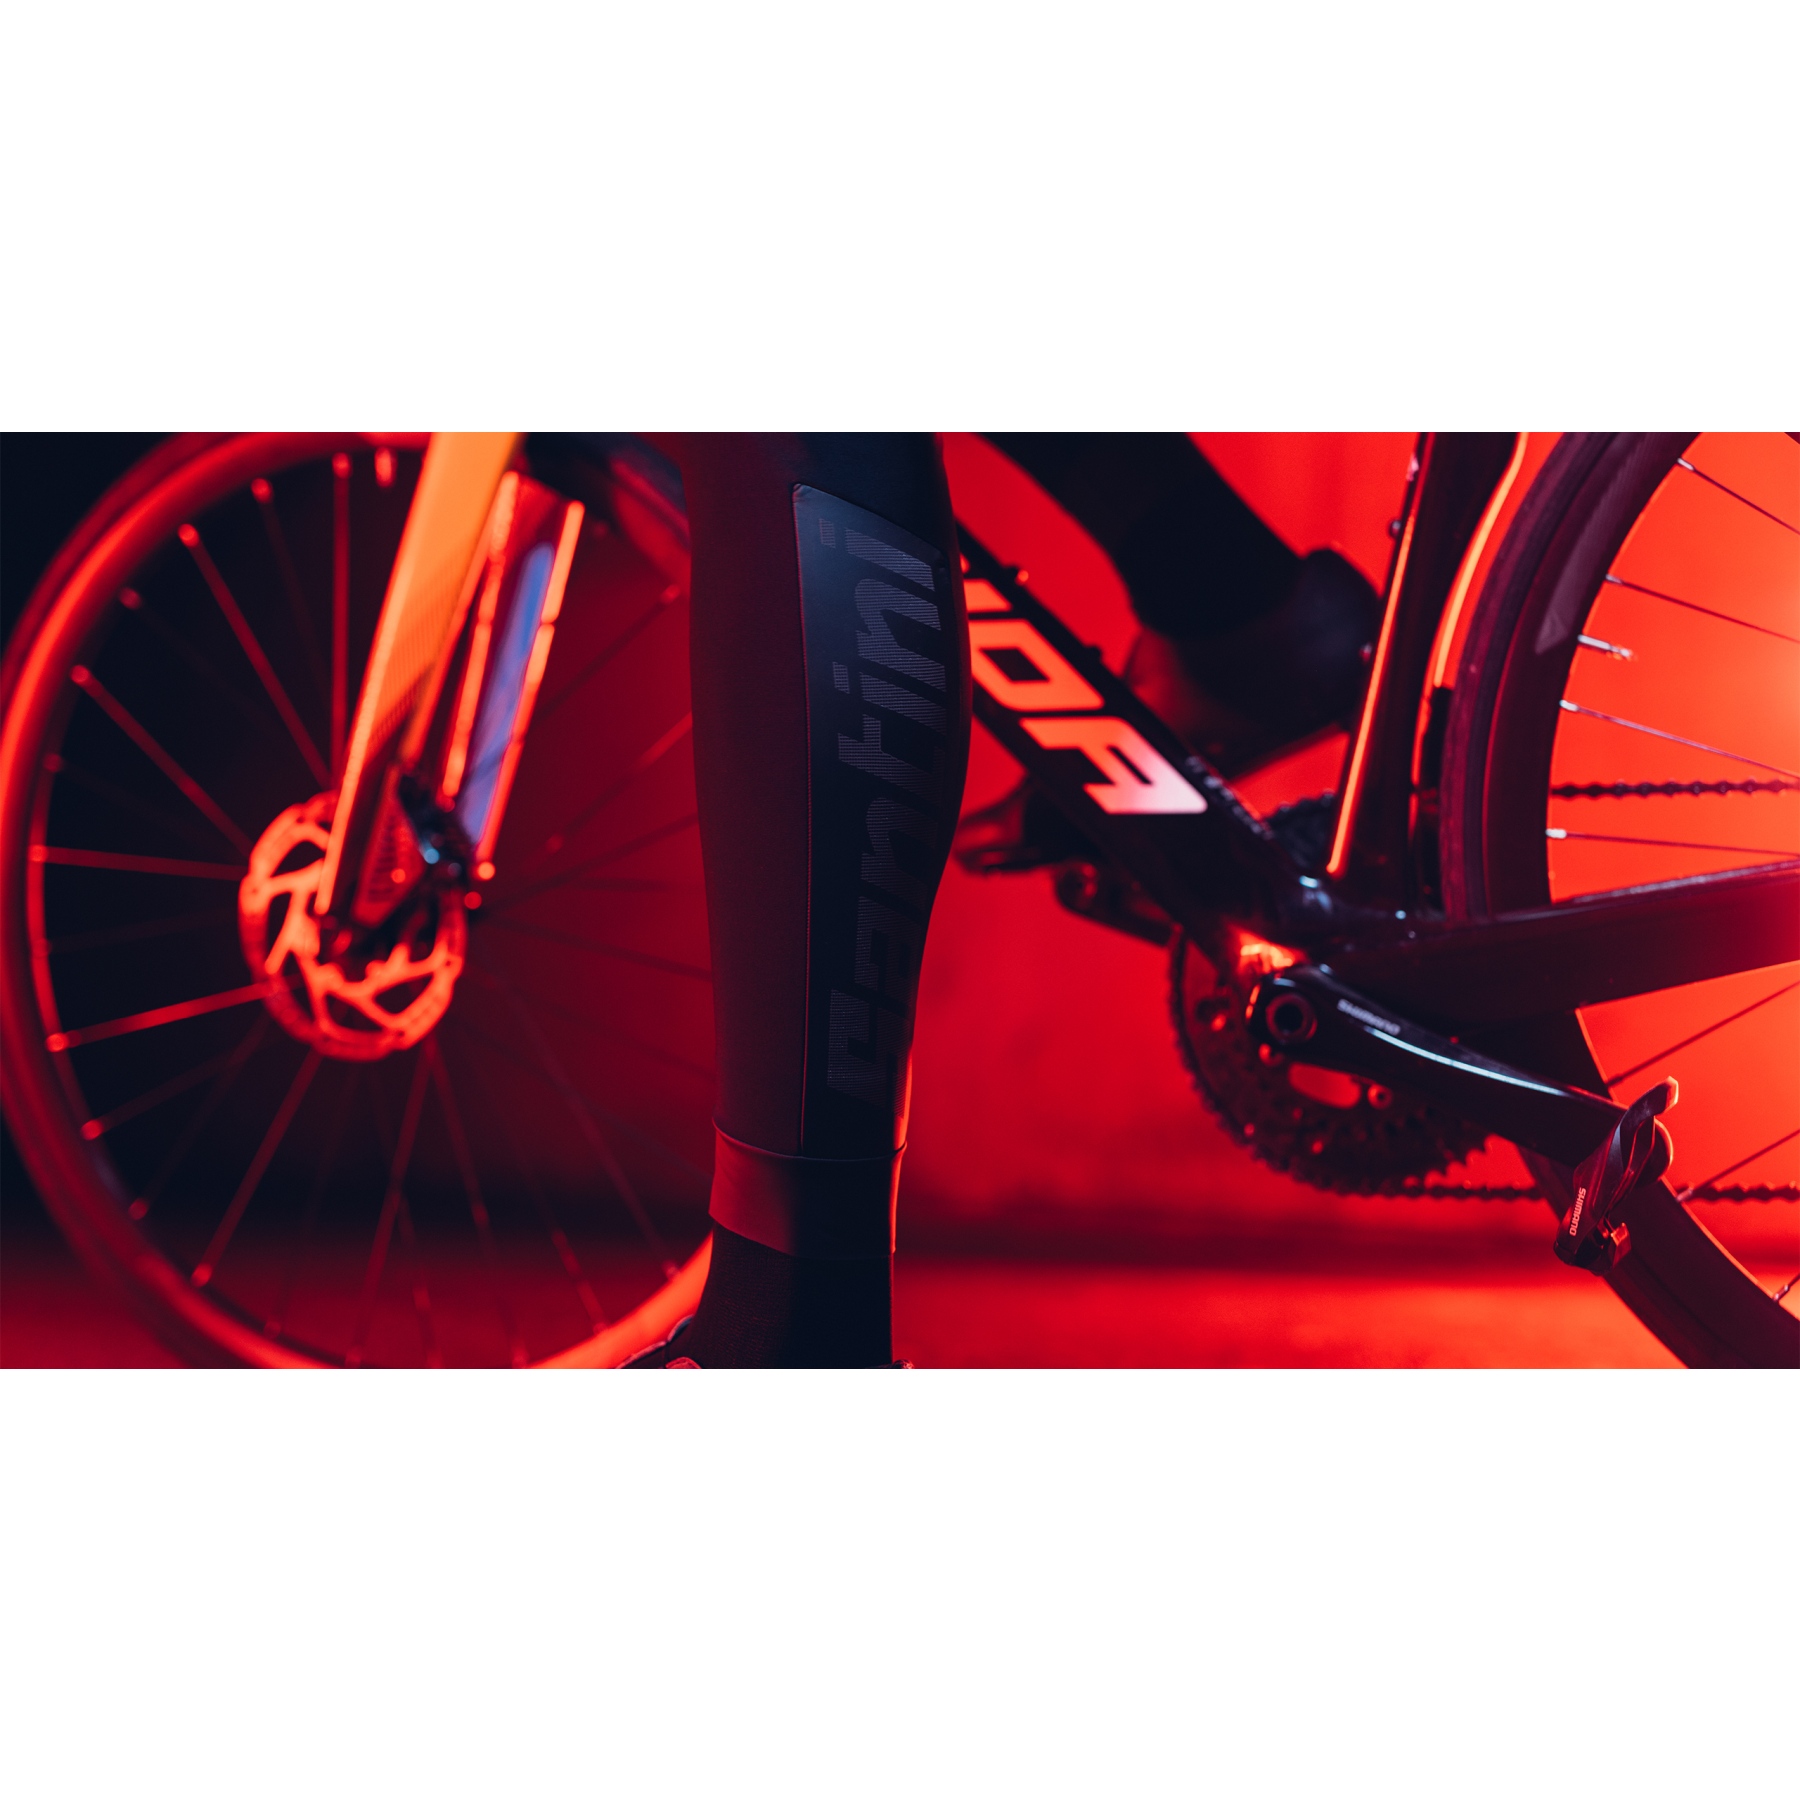 Culotte de ciclismo hombre - Fluo Orange